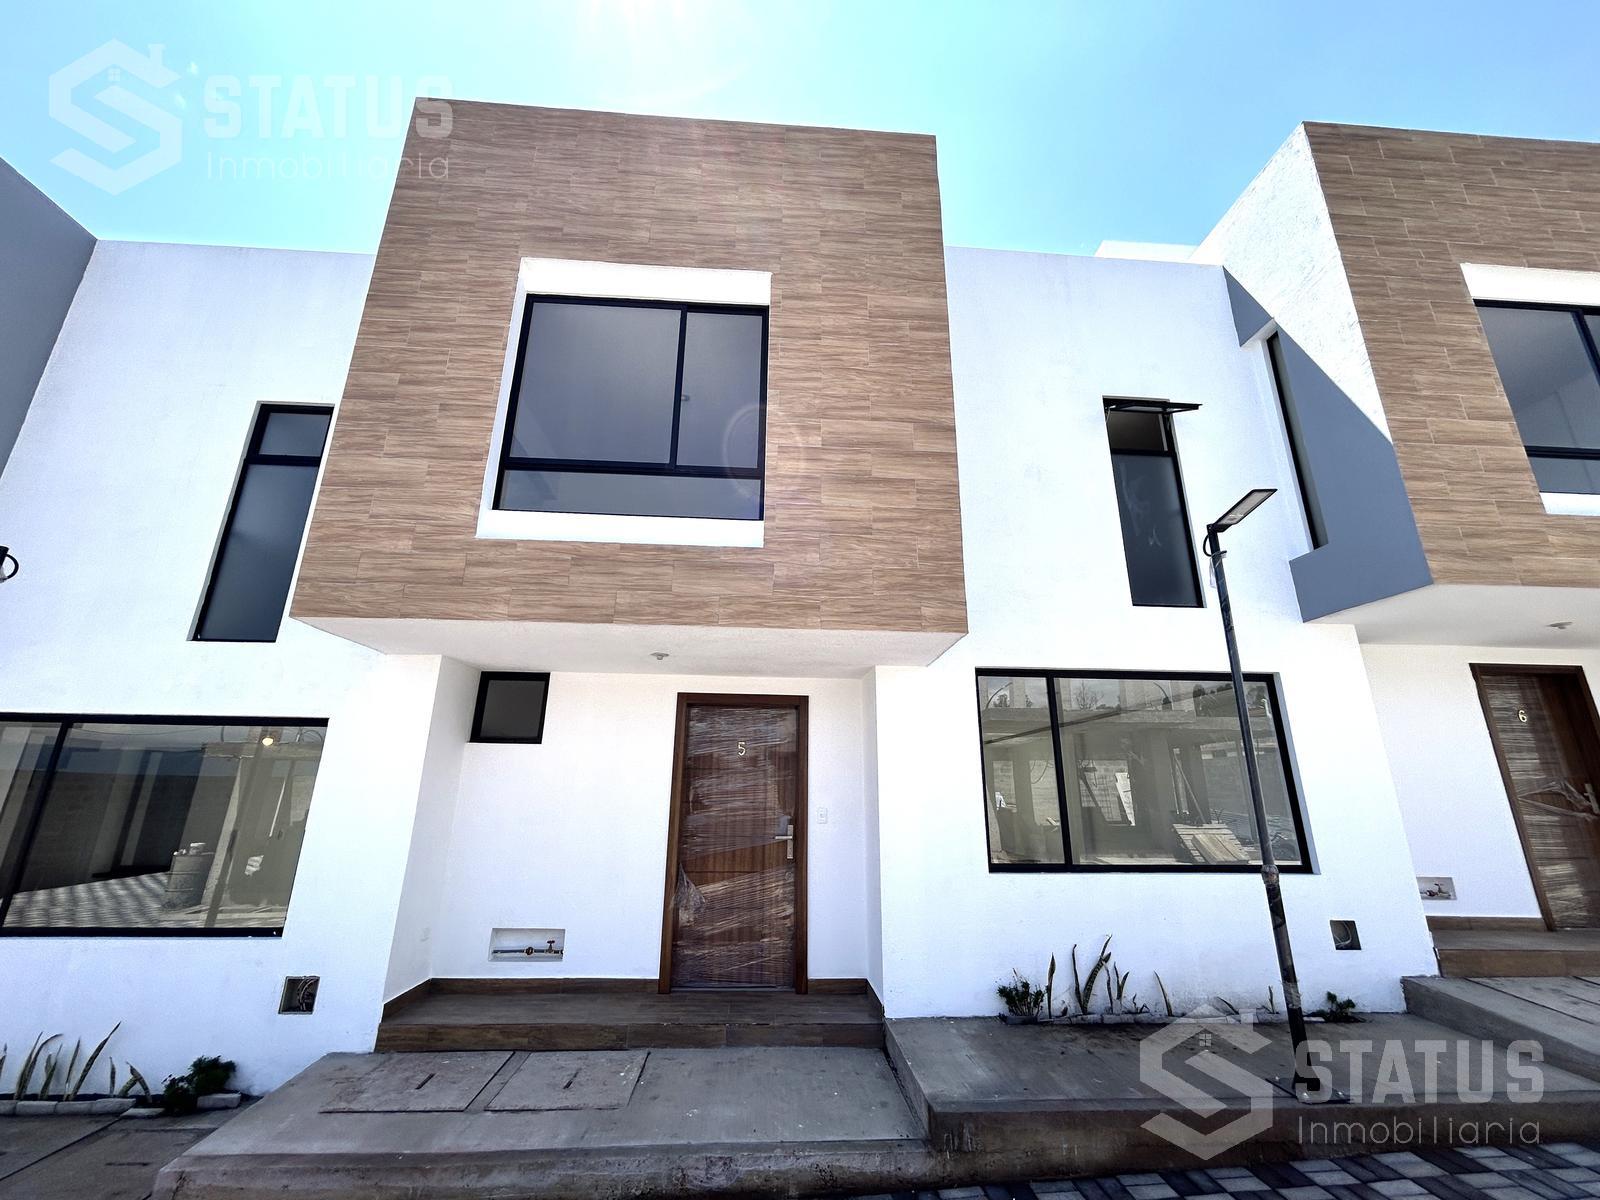 Vendo casa en conjunto ¡Aplica crédito VIP!, 3 Dorm., 2 Garajes, sector Inchalillo, 111 m, $88.000